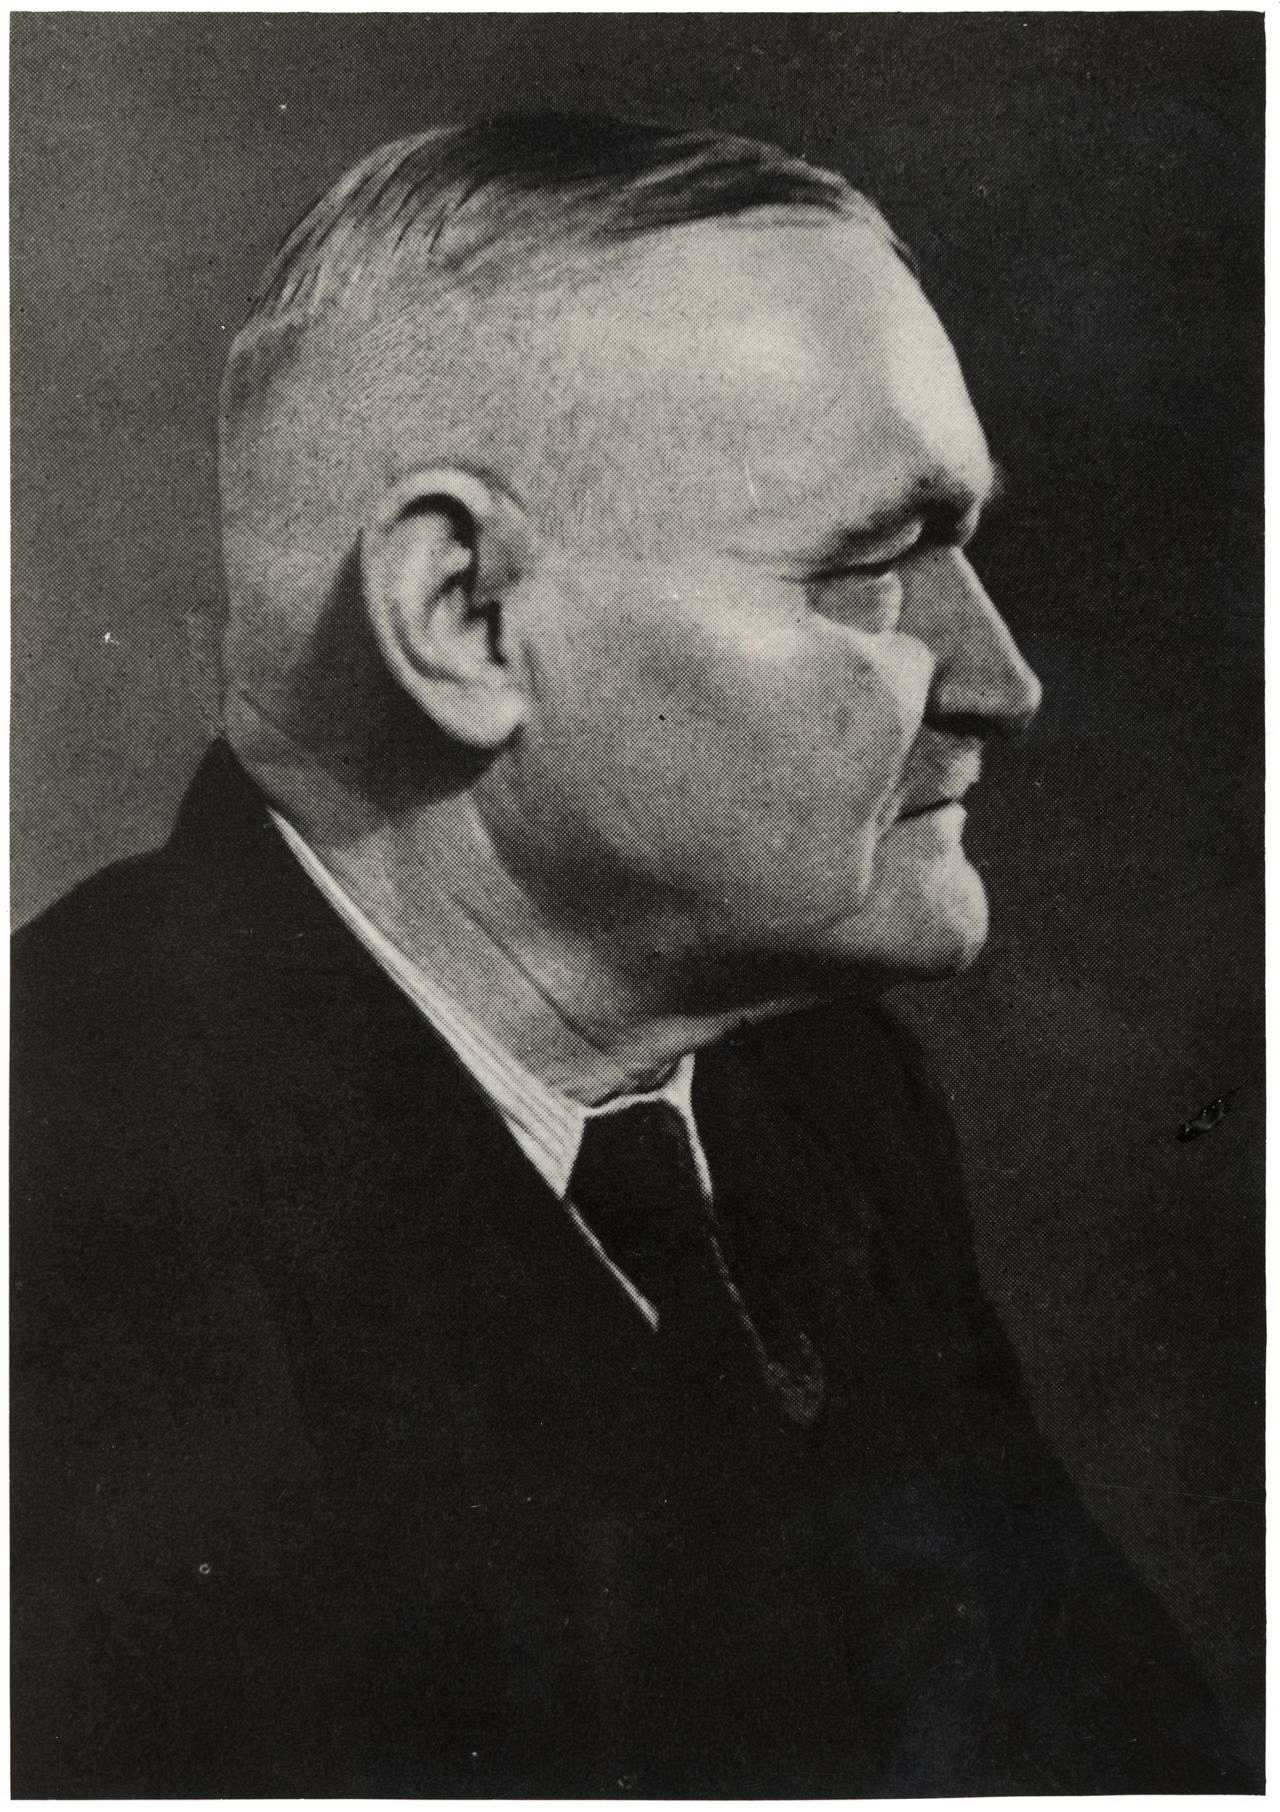 Porträtfoto von Hans Böckler, 1945.